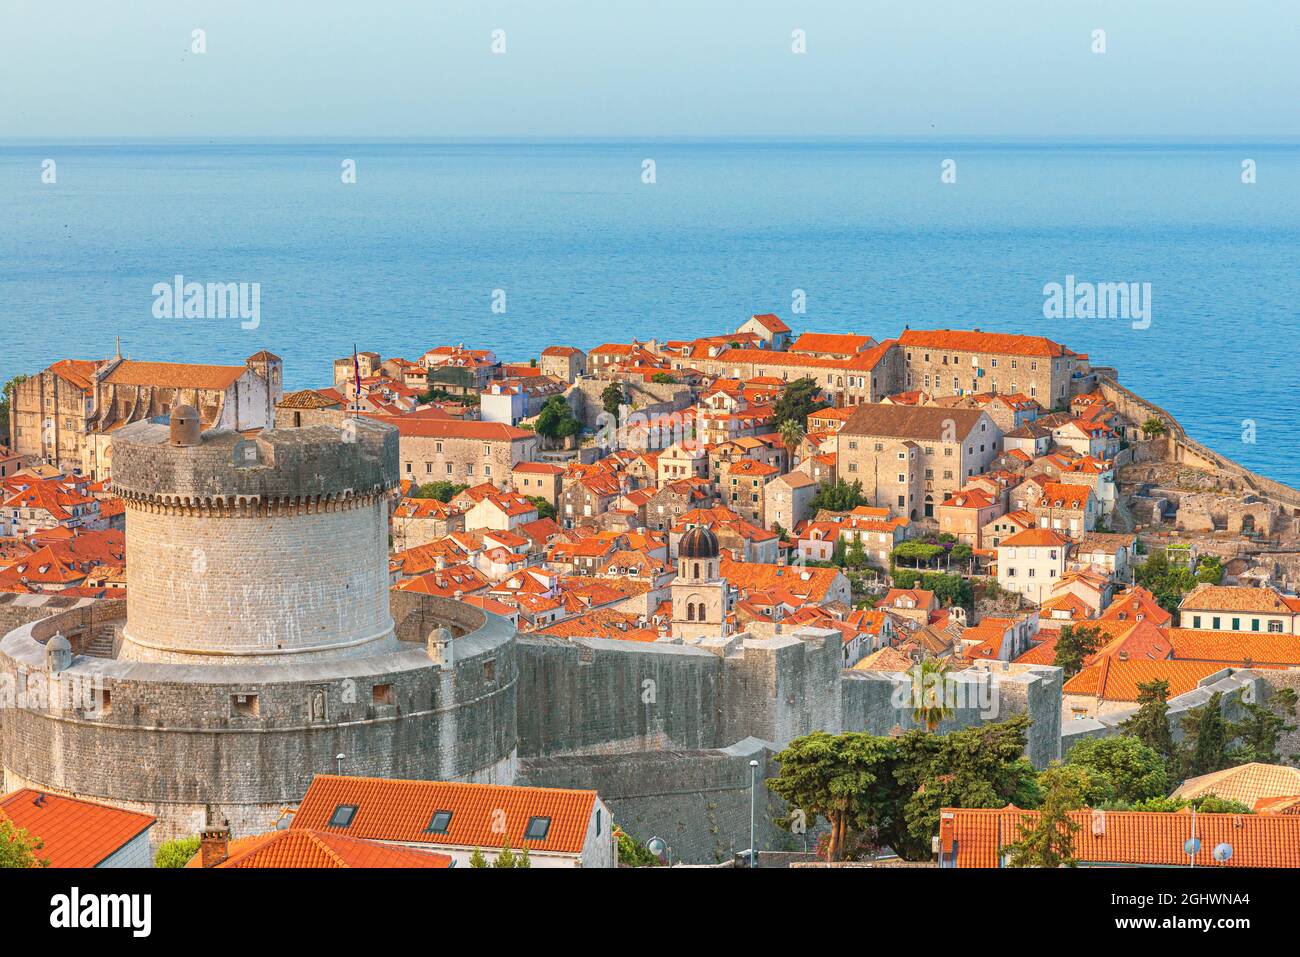 Città vecchia di Dubrovnik con la torre Minceta, le mura della città e tetti arancioni sul mare Adriatico in Croazia. Famosa destinazione di viaggio europea in Europa Foto Stock